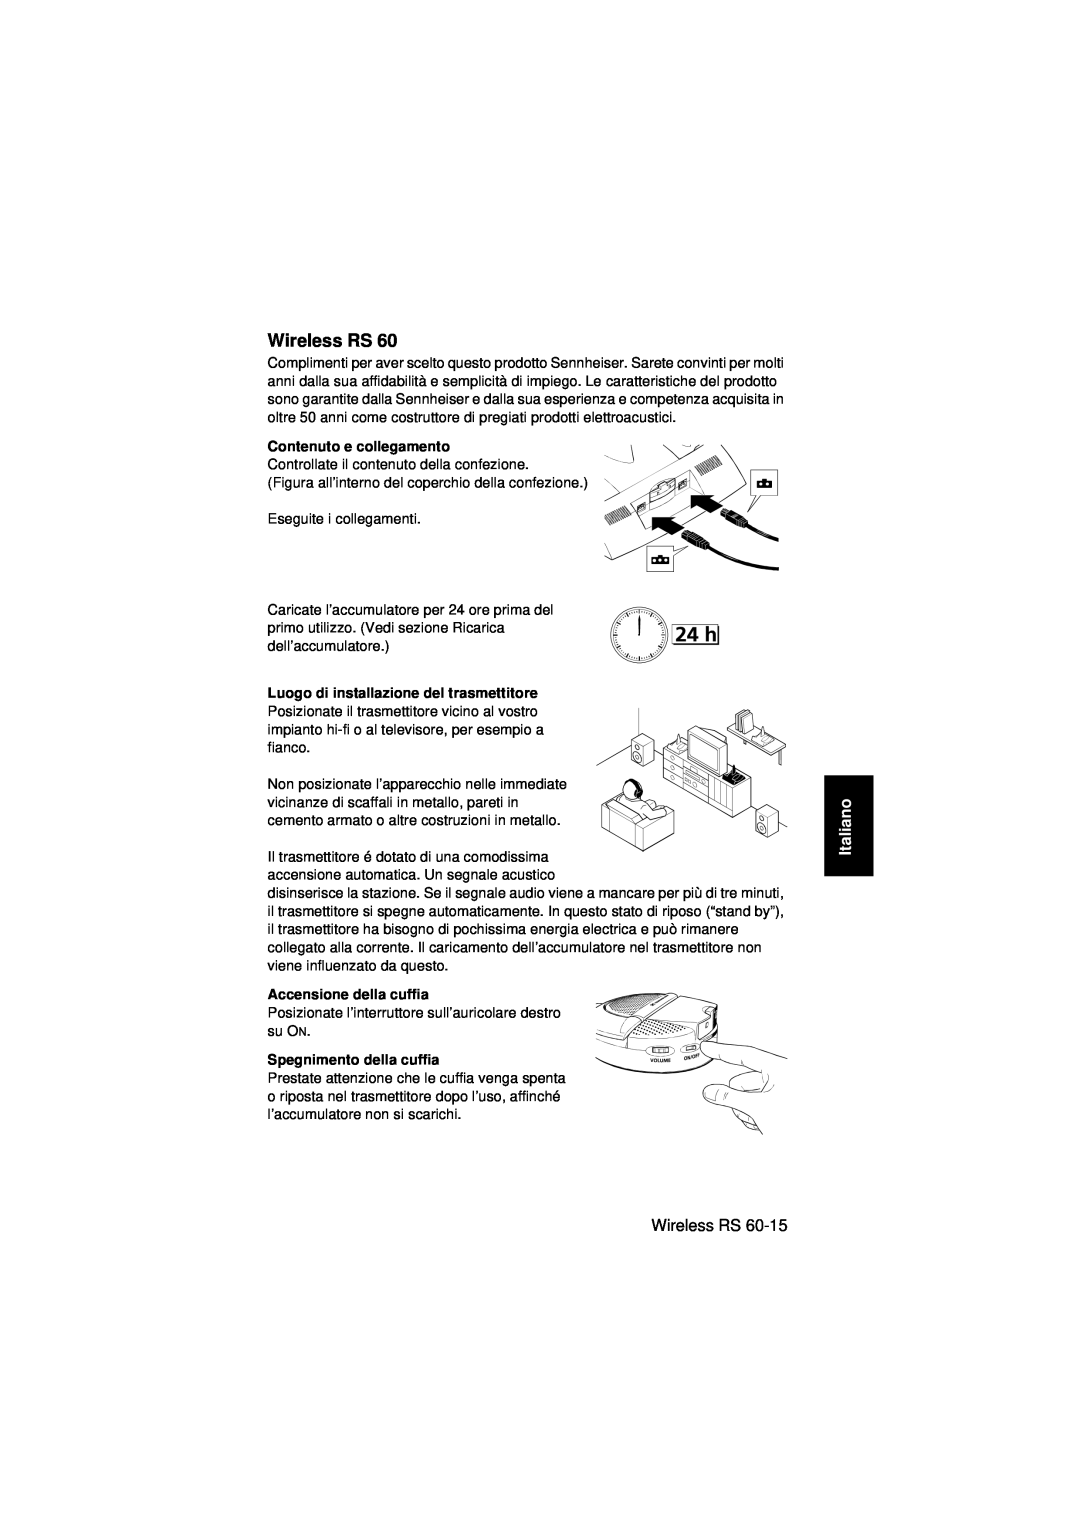 Sennheiser Wireless RS 60 instruction manual Italiano, Contenuto e collegamento, Luogo di installazione del trasmettitore 